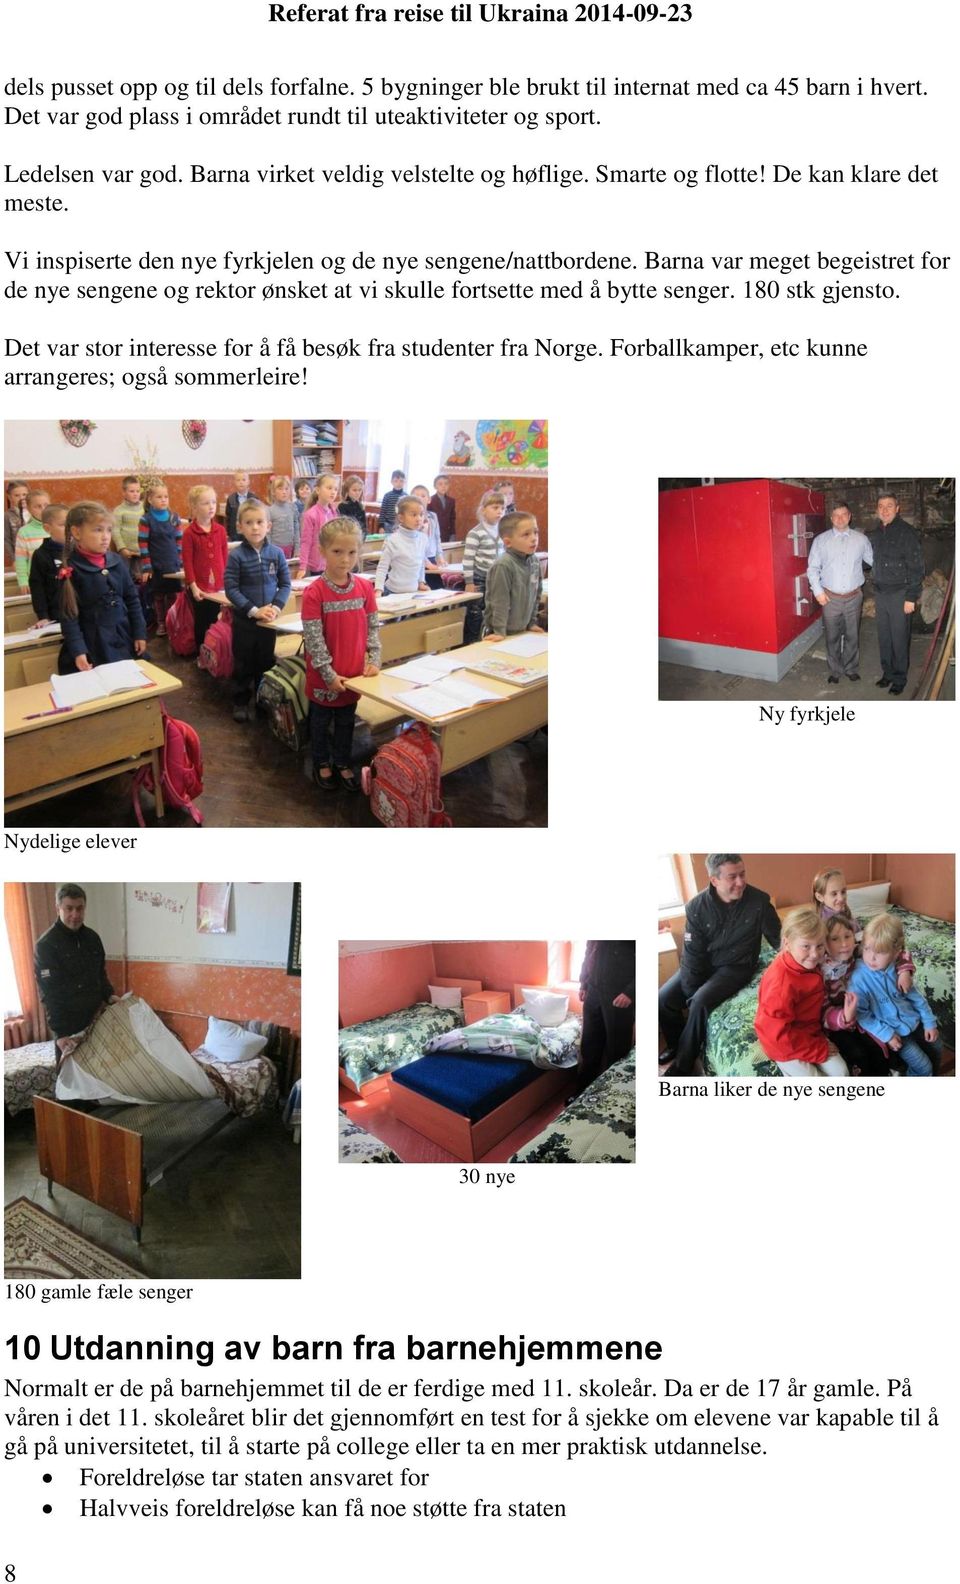 Barna var meget begeistret for de nye sengene og rektor ønsket at vi skulle fortsette med å bytte senger. 180 stk gjensto. Det var stor interesse for å få besøk fra studenter fra Norge.